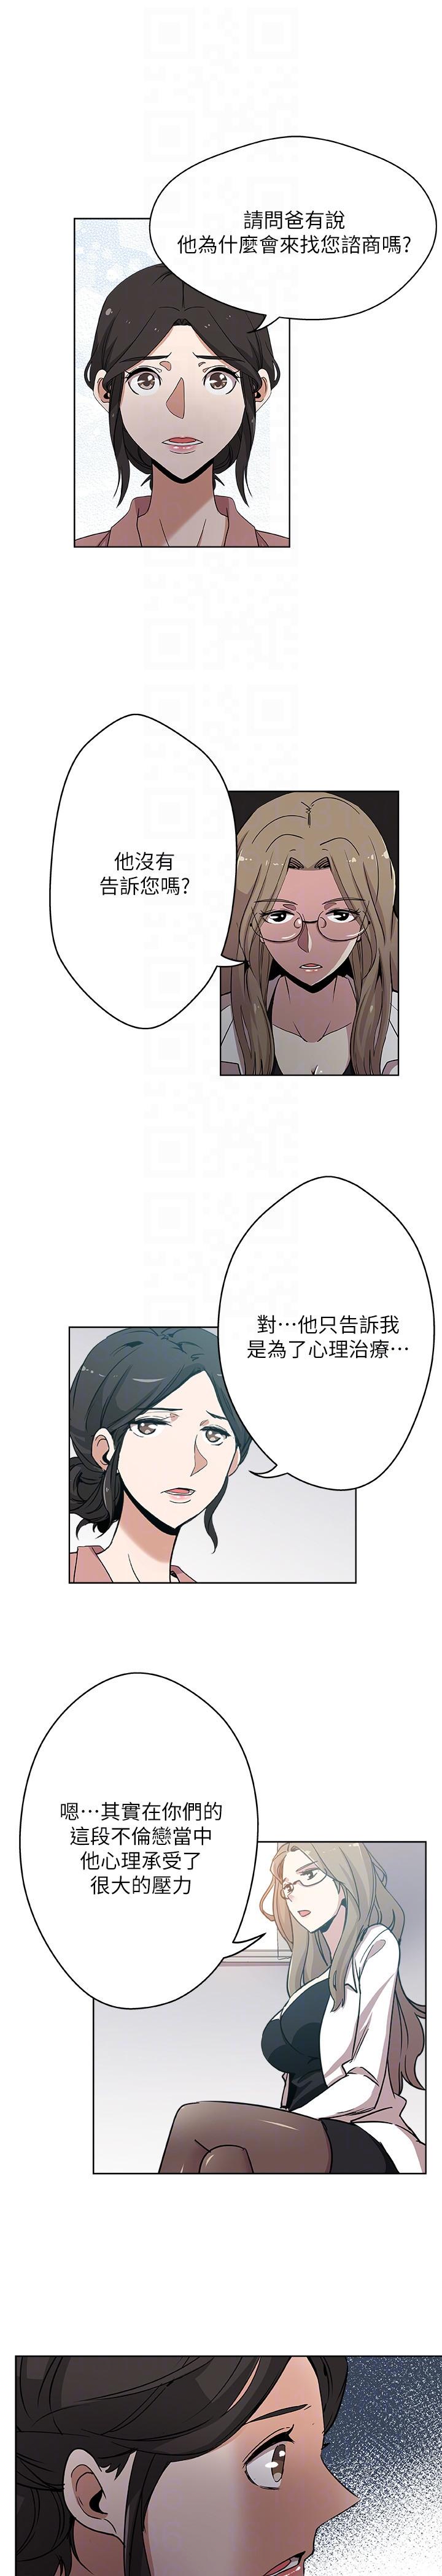 韩国污漫画 新媳婦 第10话-公公的「服务」 21